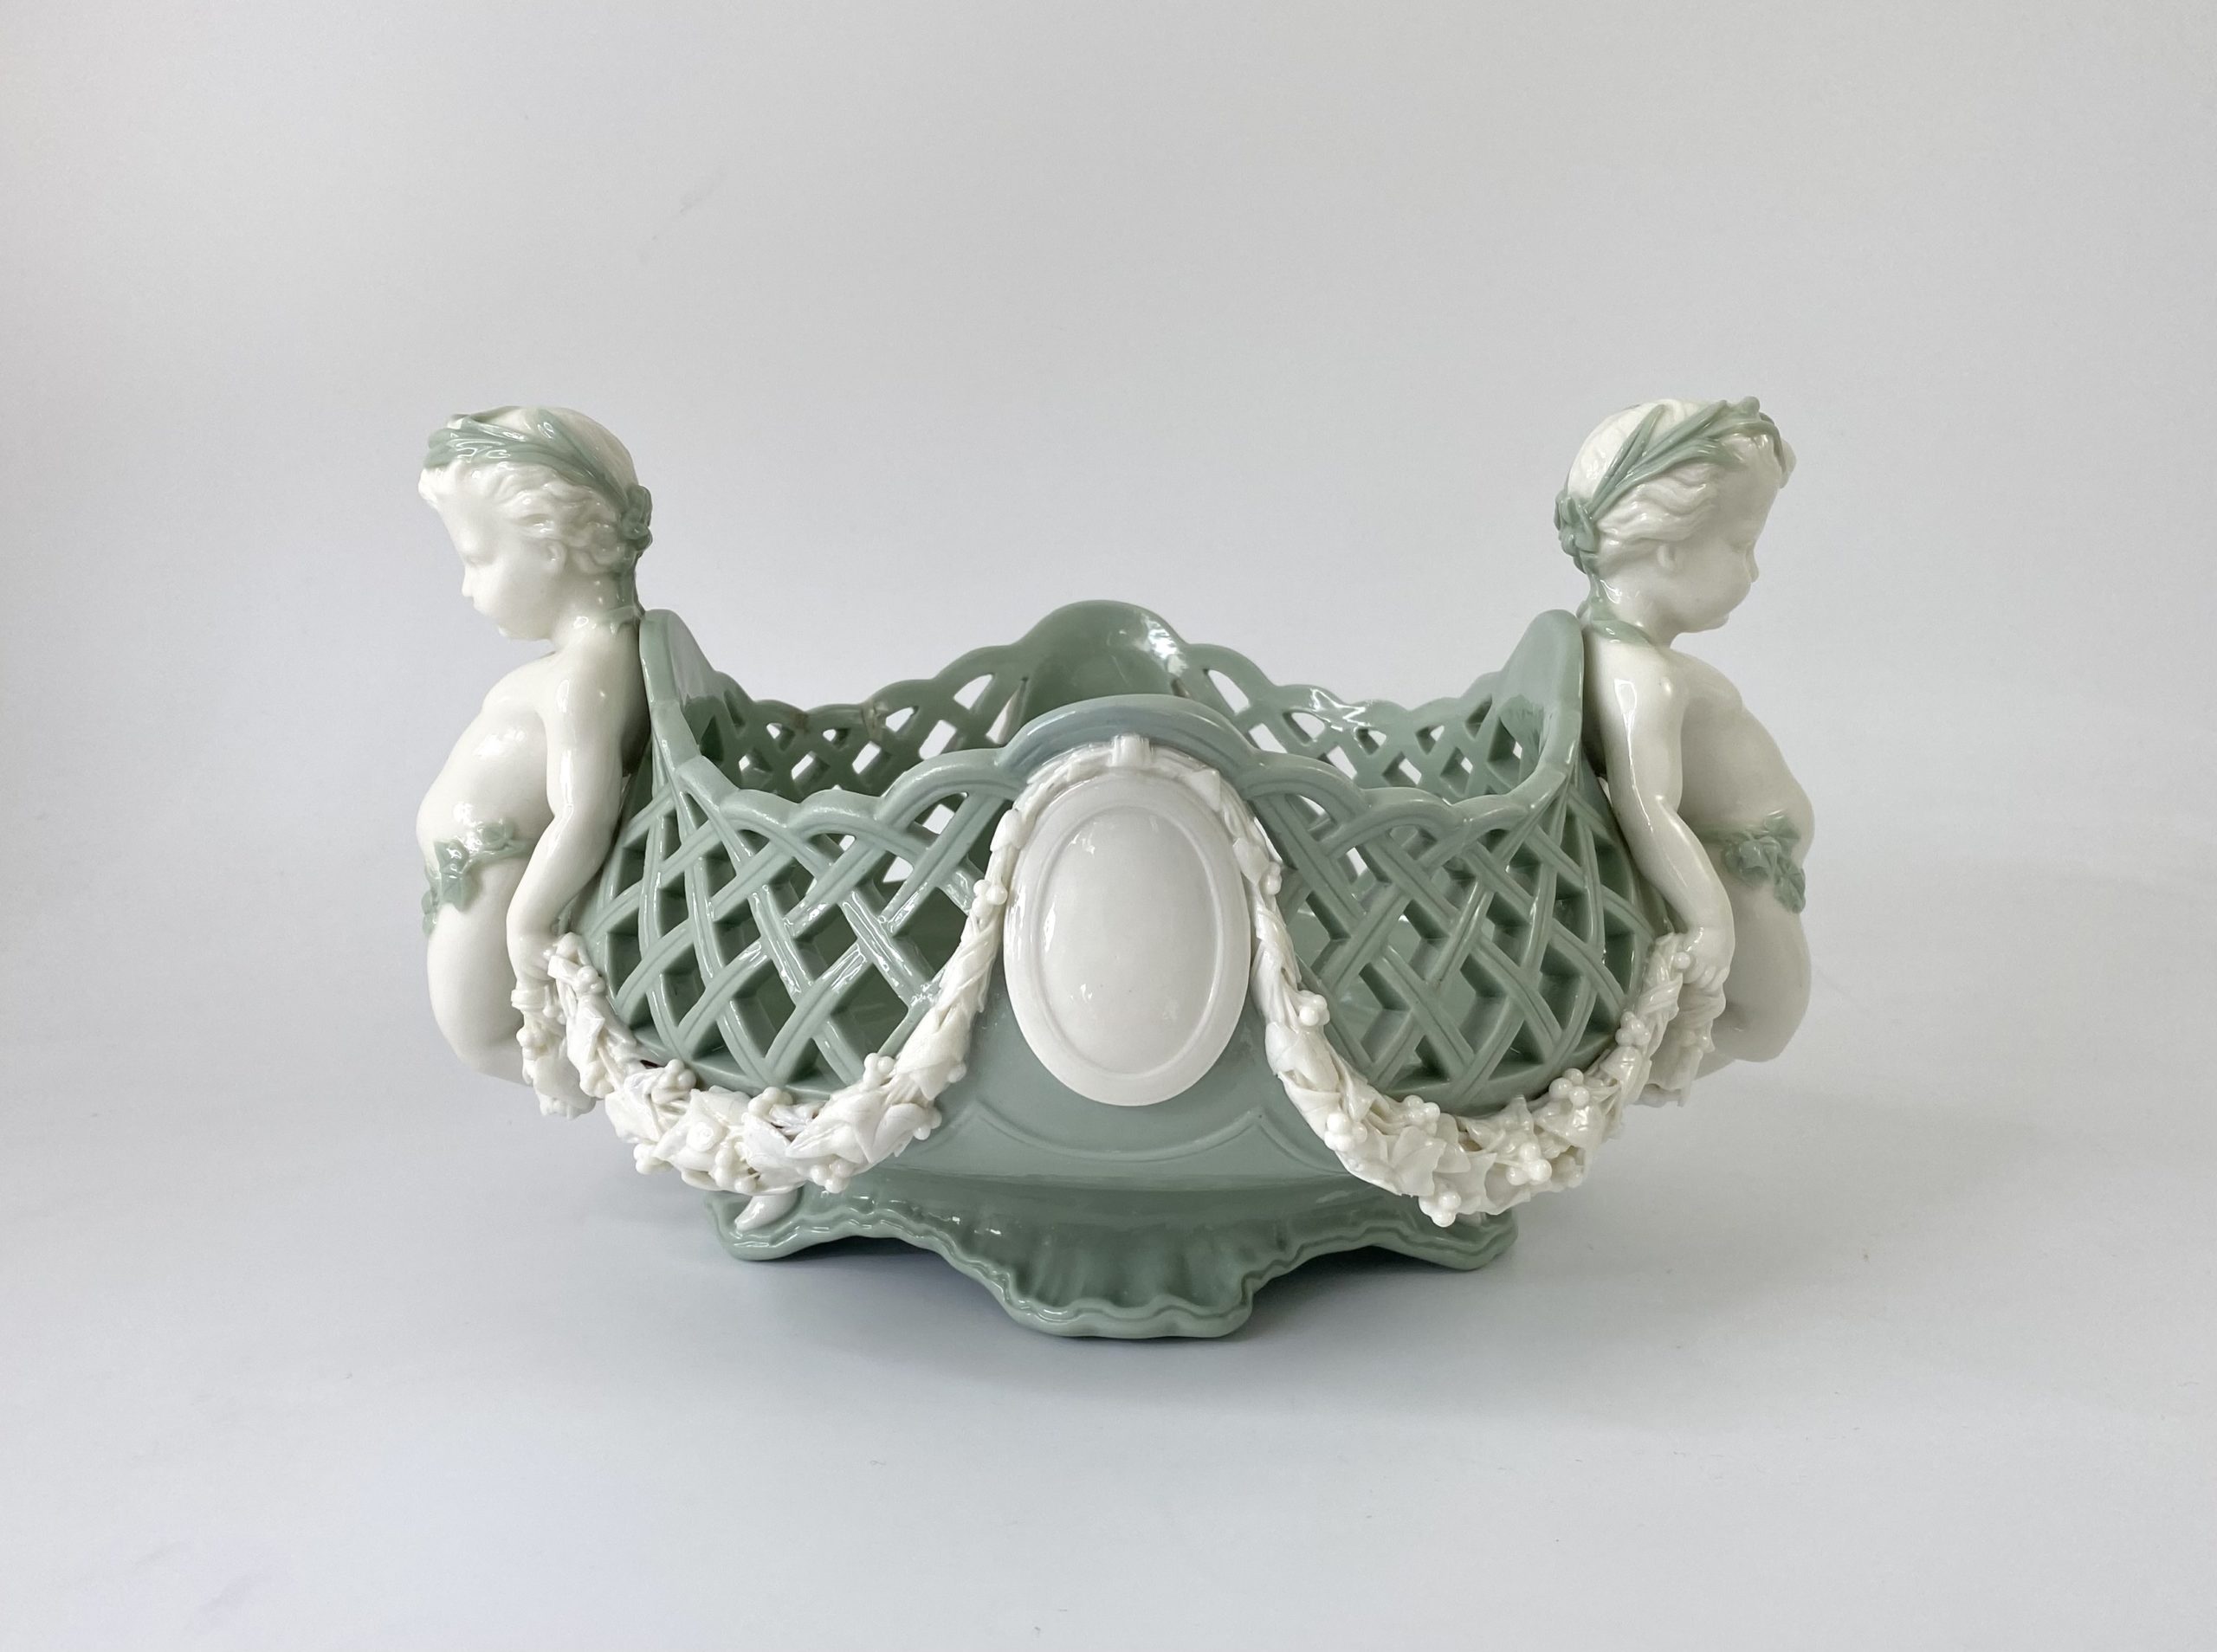 Minton porcelain ‘Pate sur Pate’ basket, dated 1867